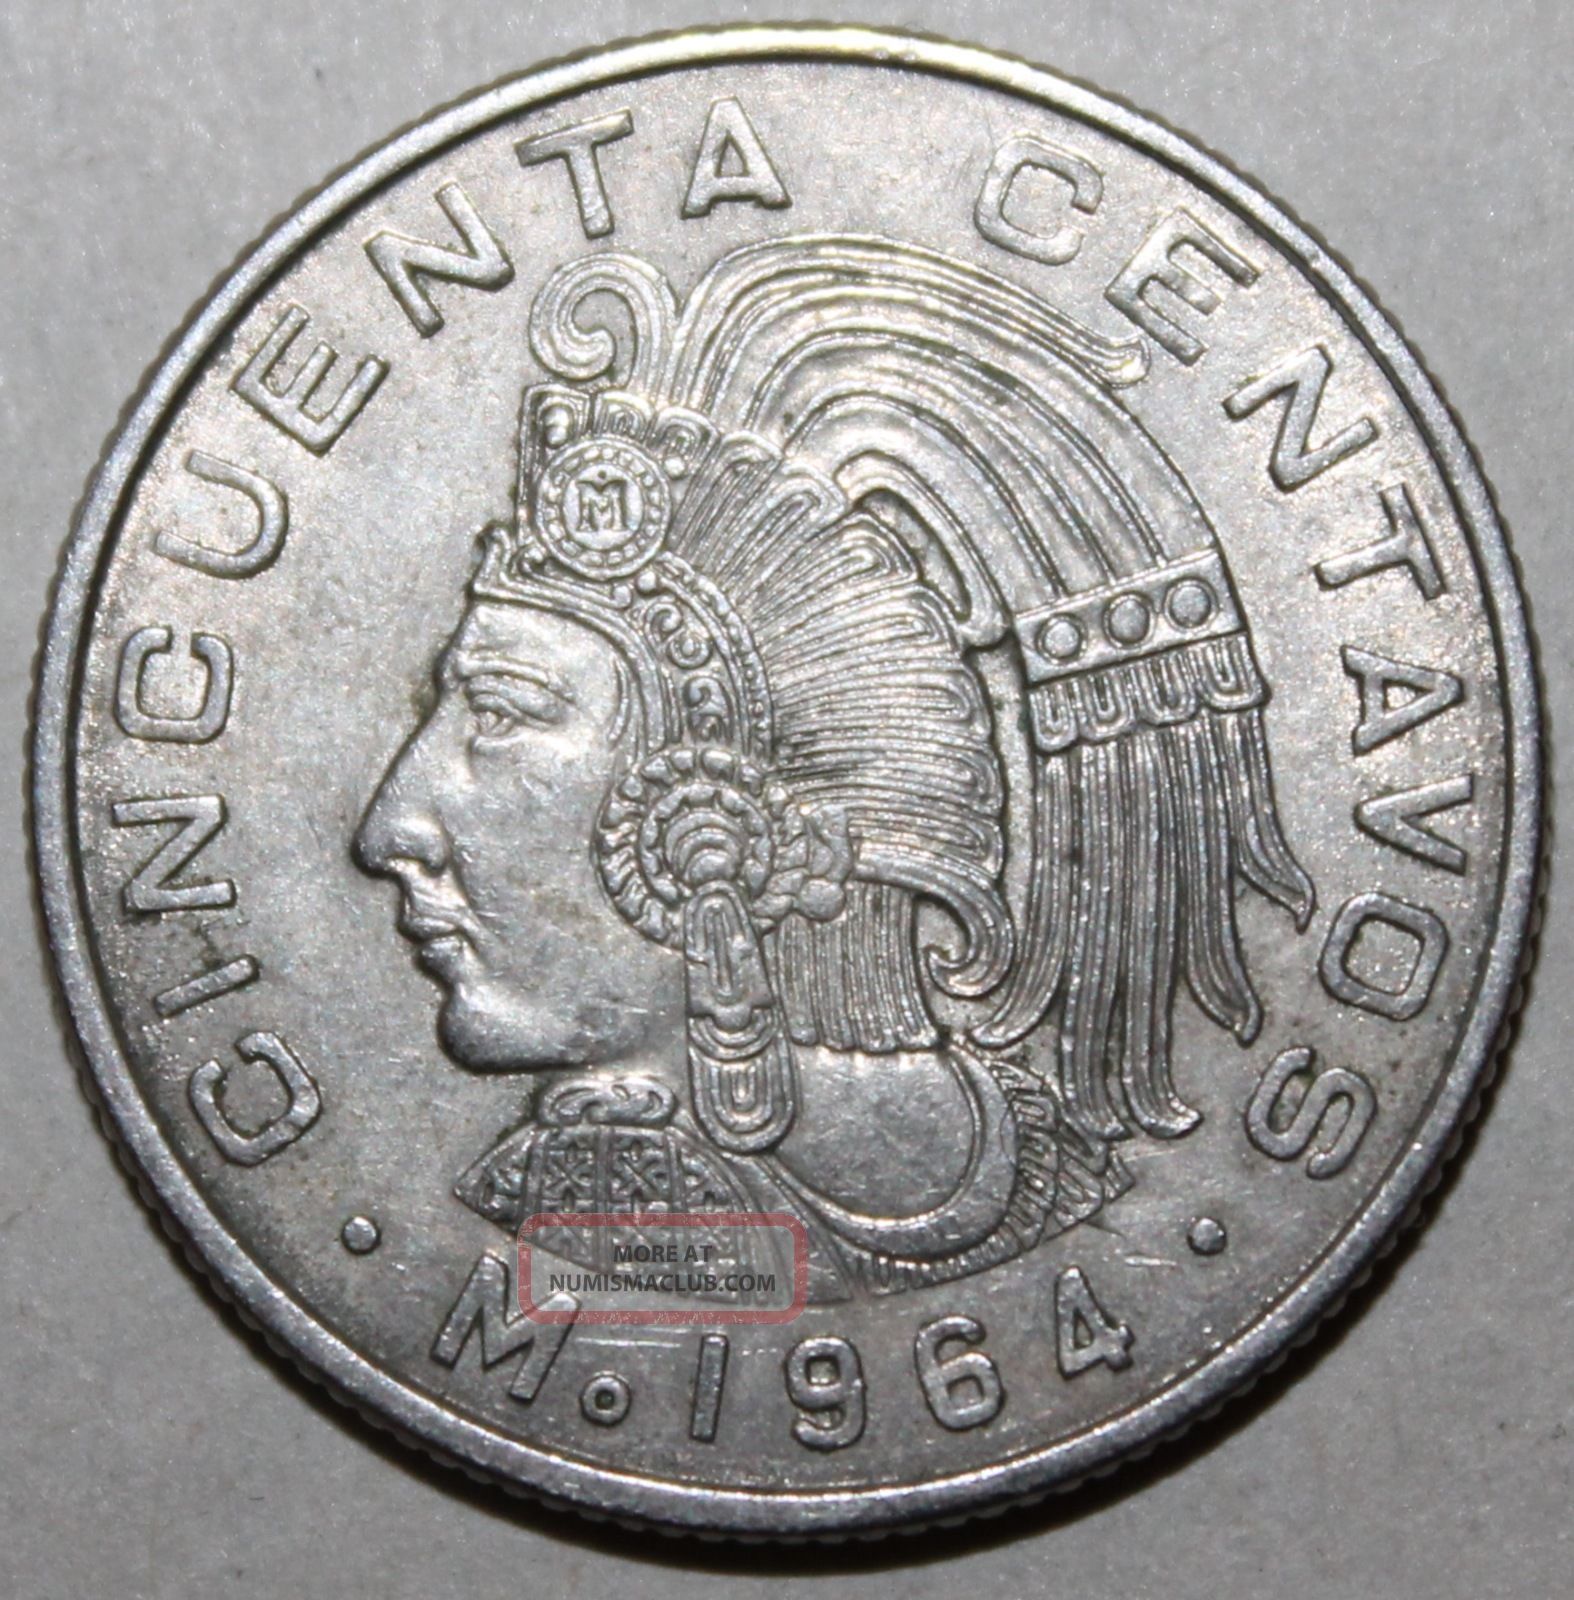 Mexican 50 Centavos Coin, 1964 - Km 451 - Mexico - Cuauhtémoc - Fifty